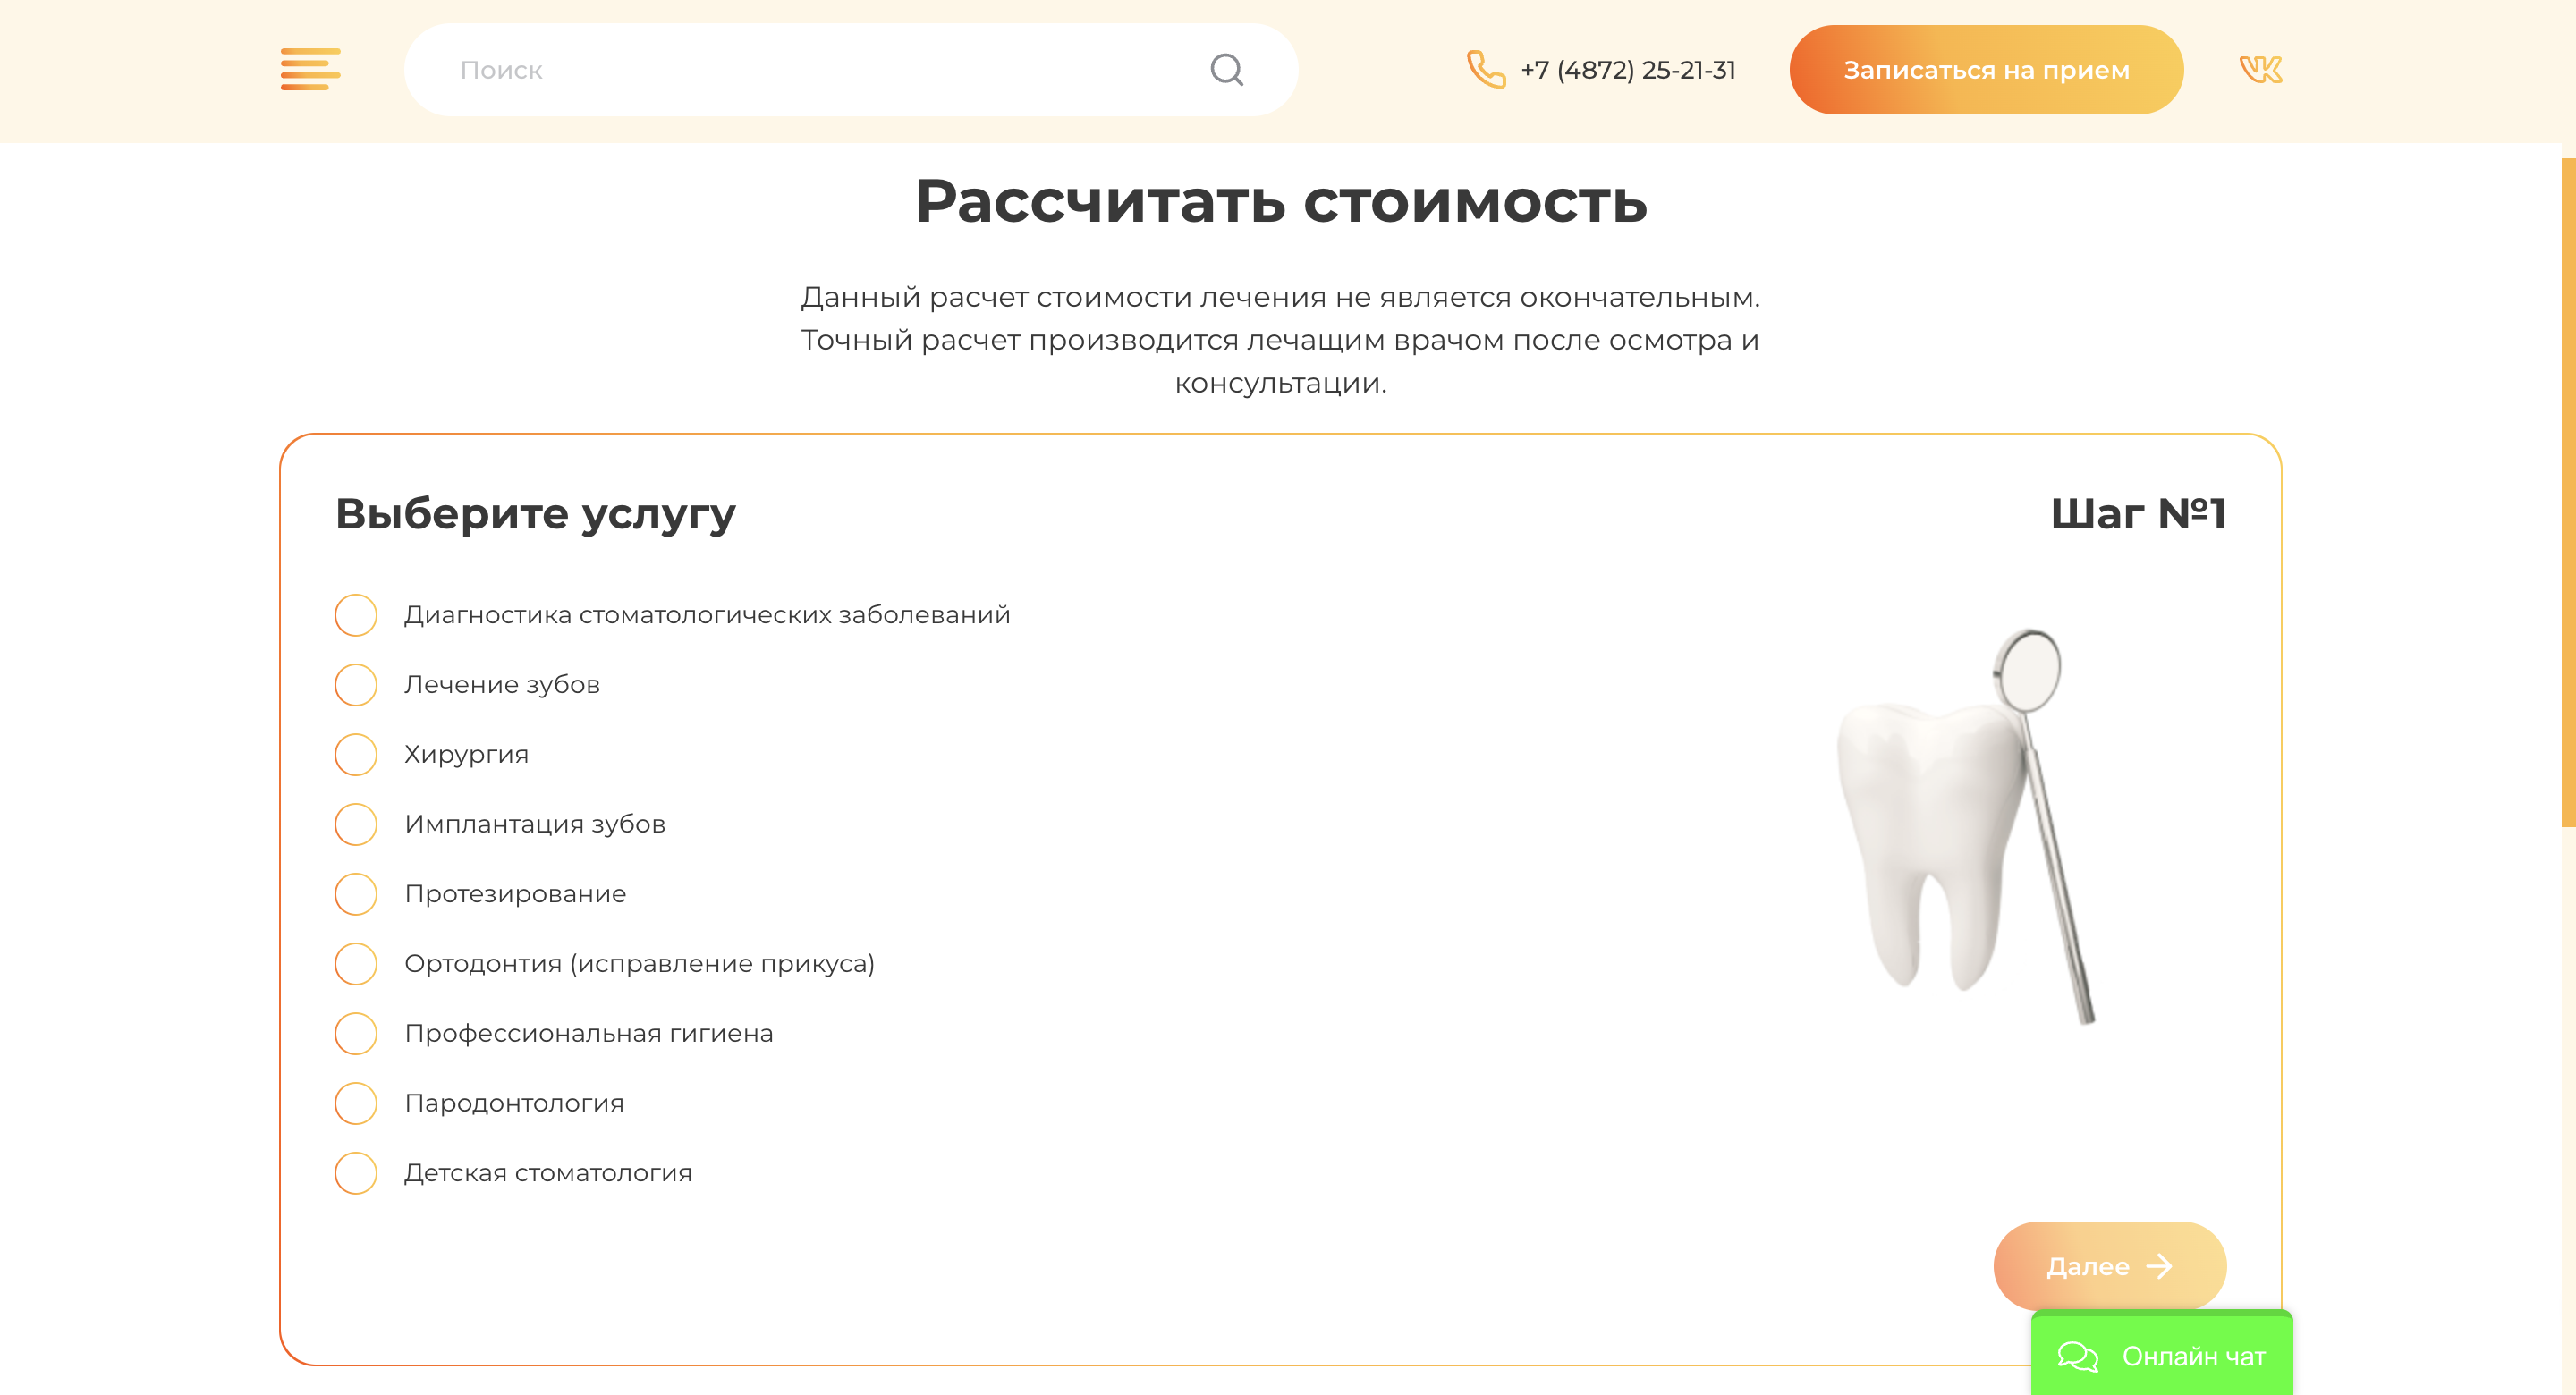 tuladent.ru / Форма «Рассчитать стоимость»